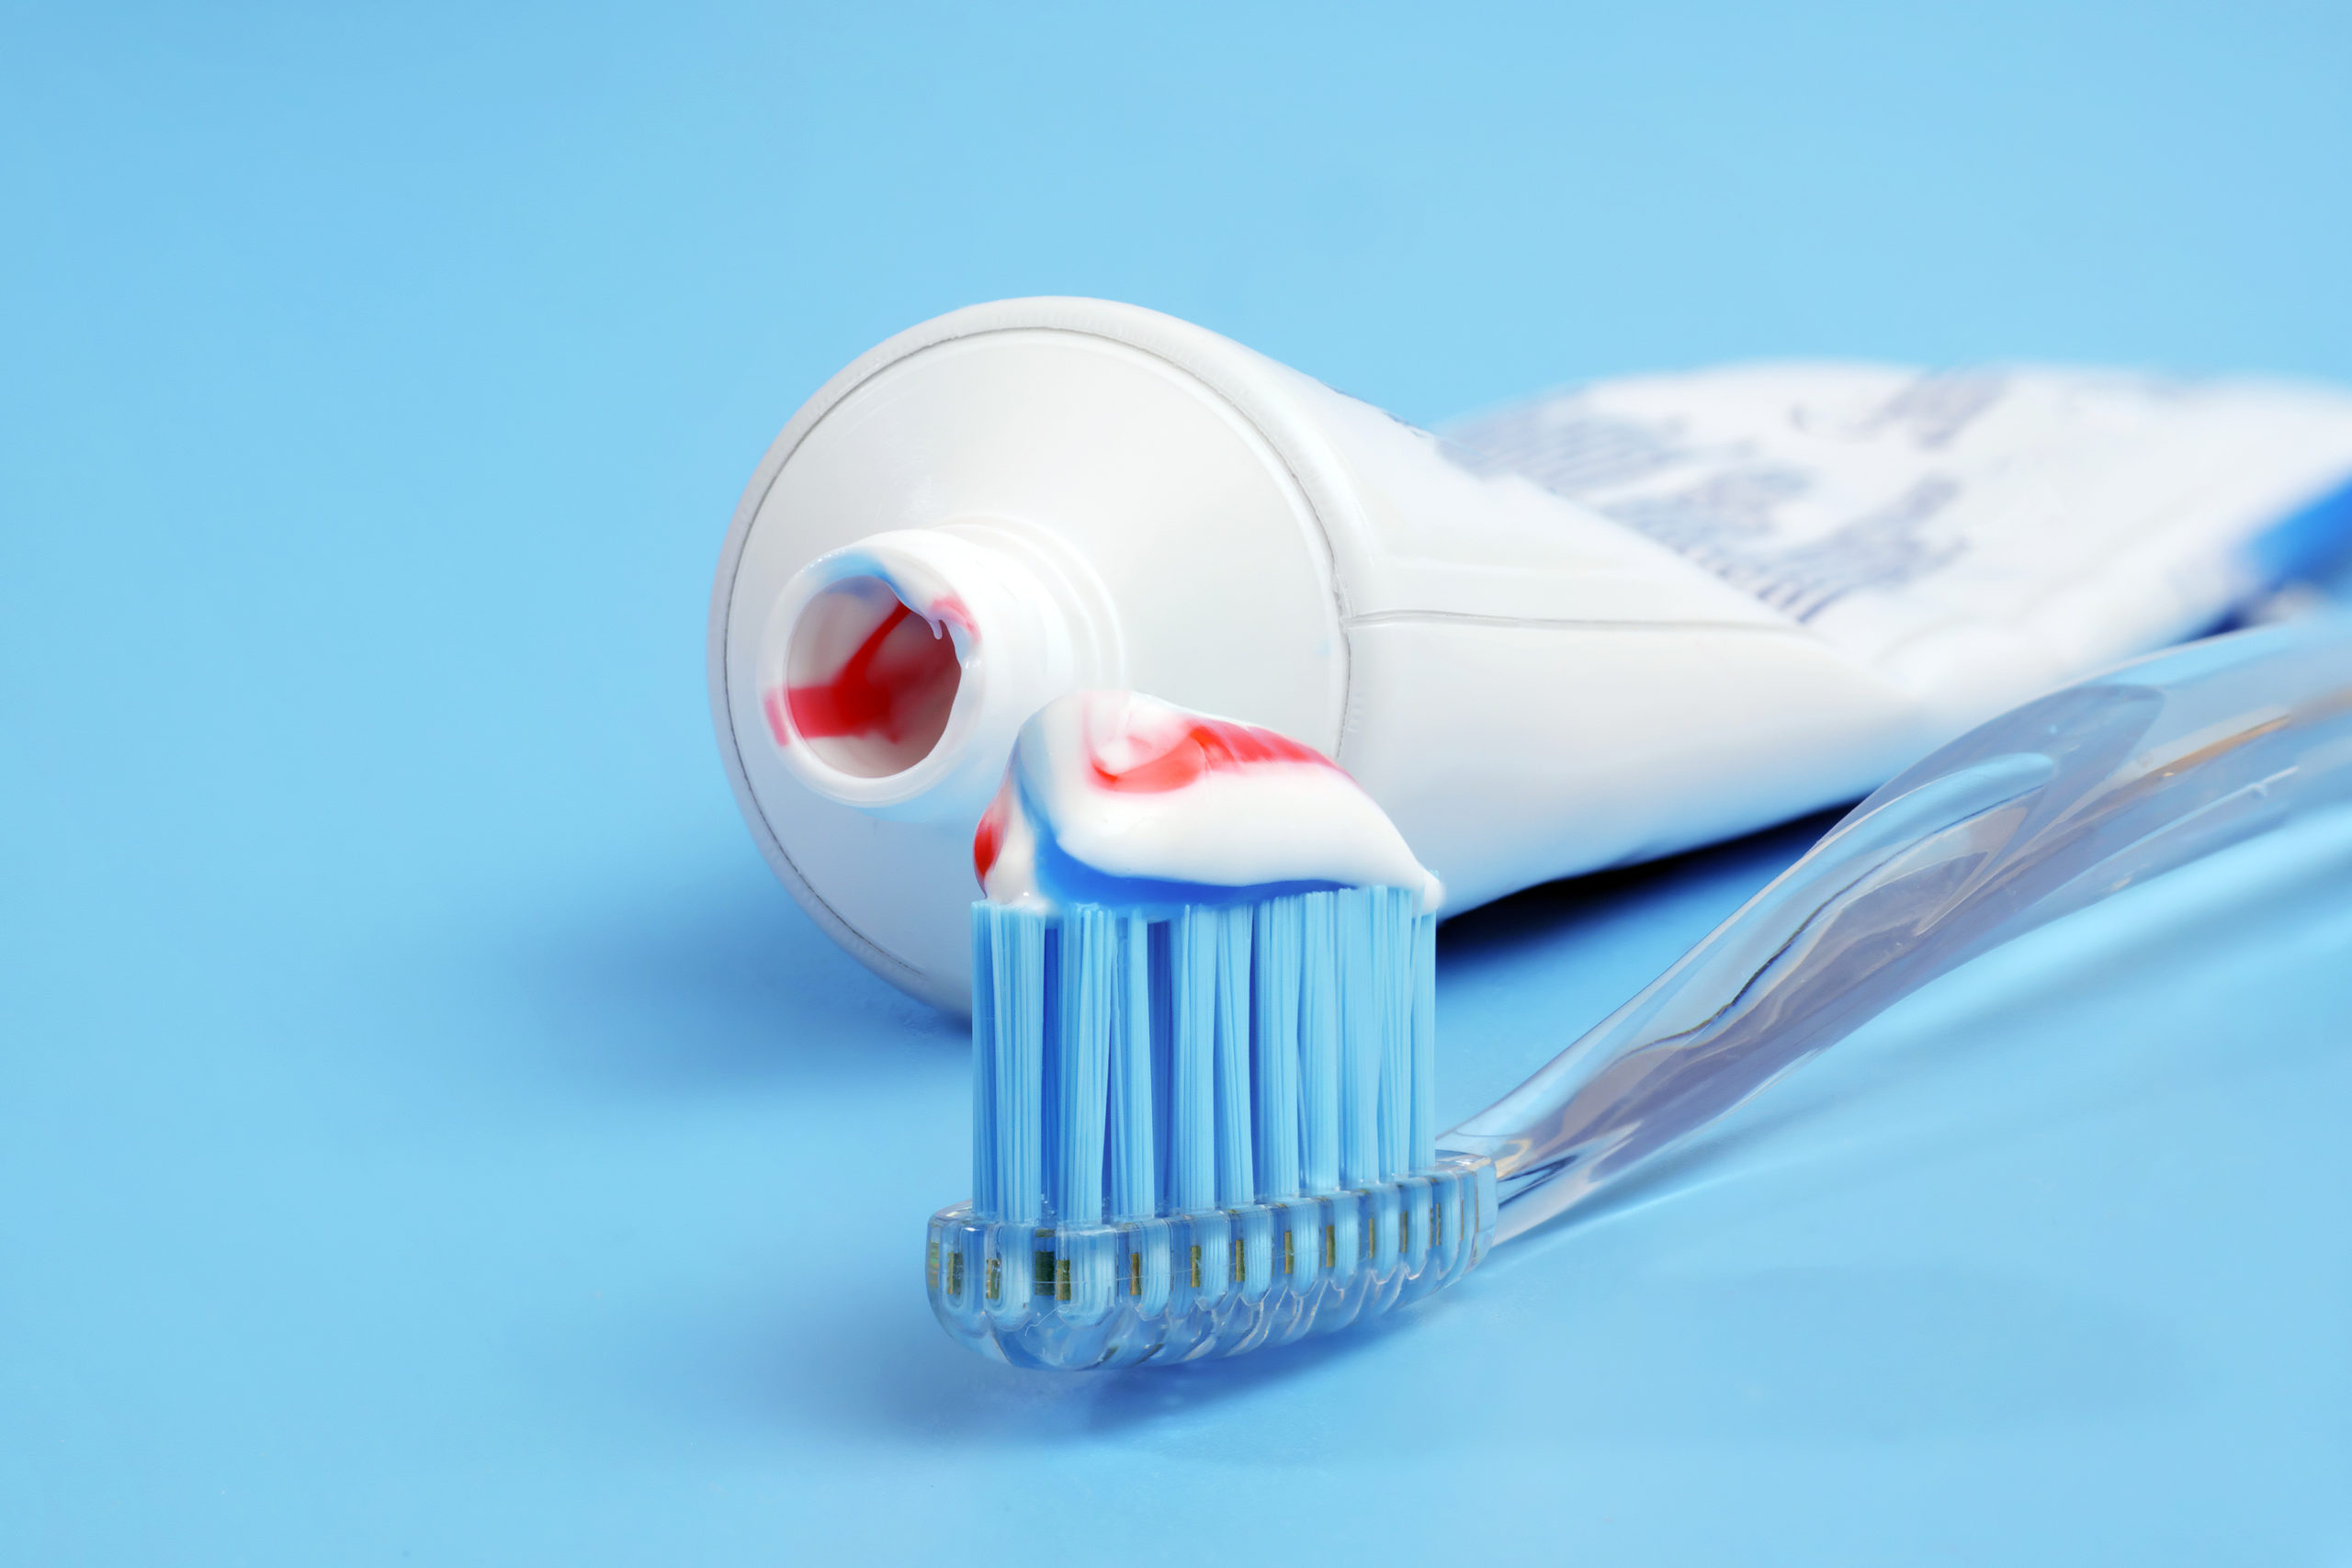 Flúor nas pastas de dentes é venenoso e prejudicial à saúde? A dosagem foi estudada para não fazer mal